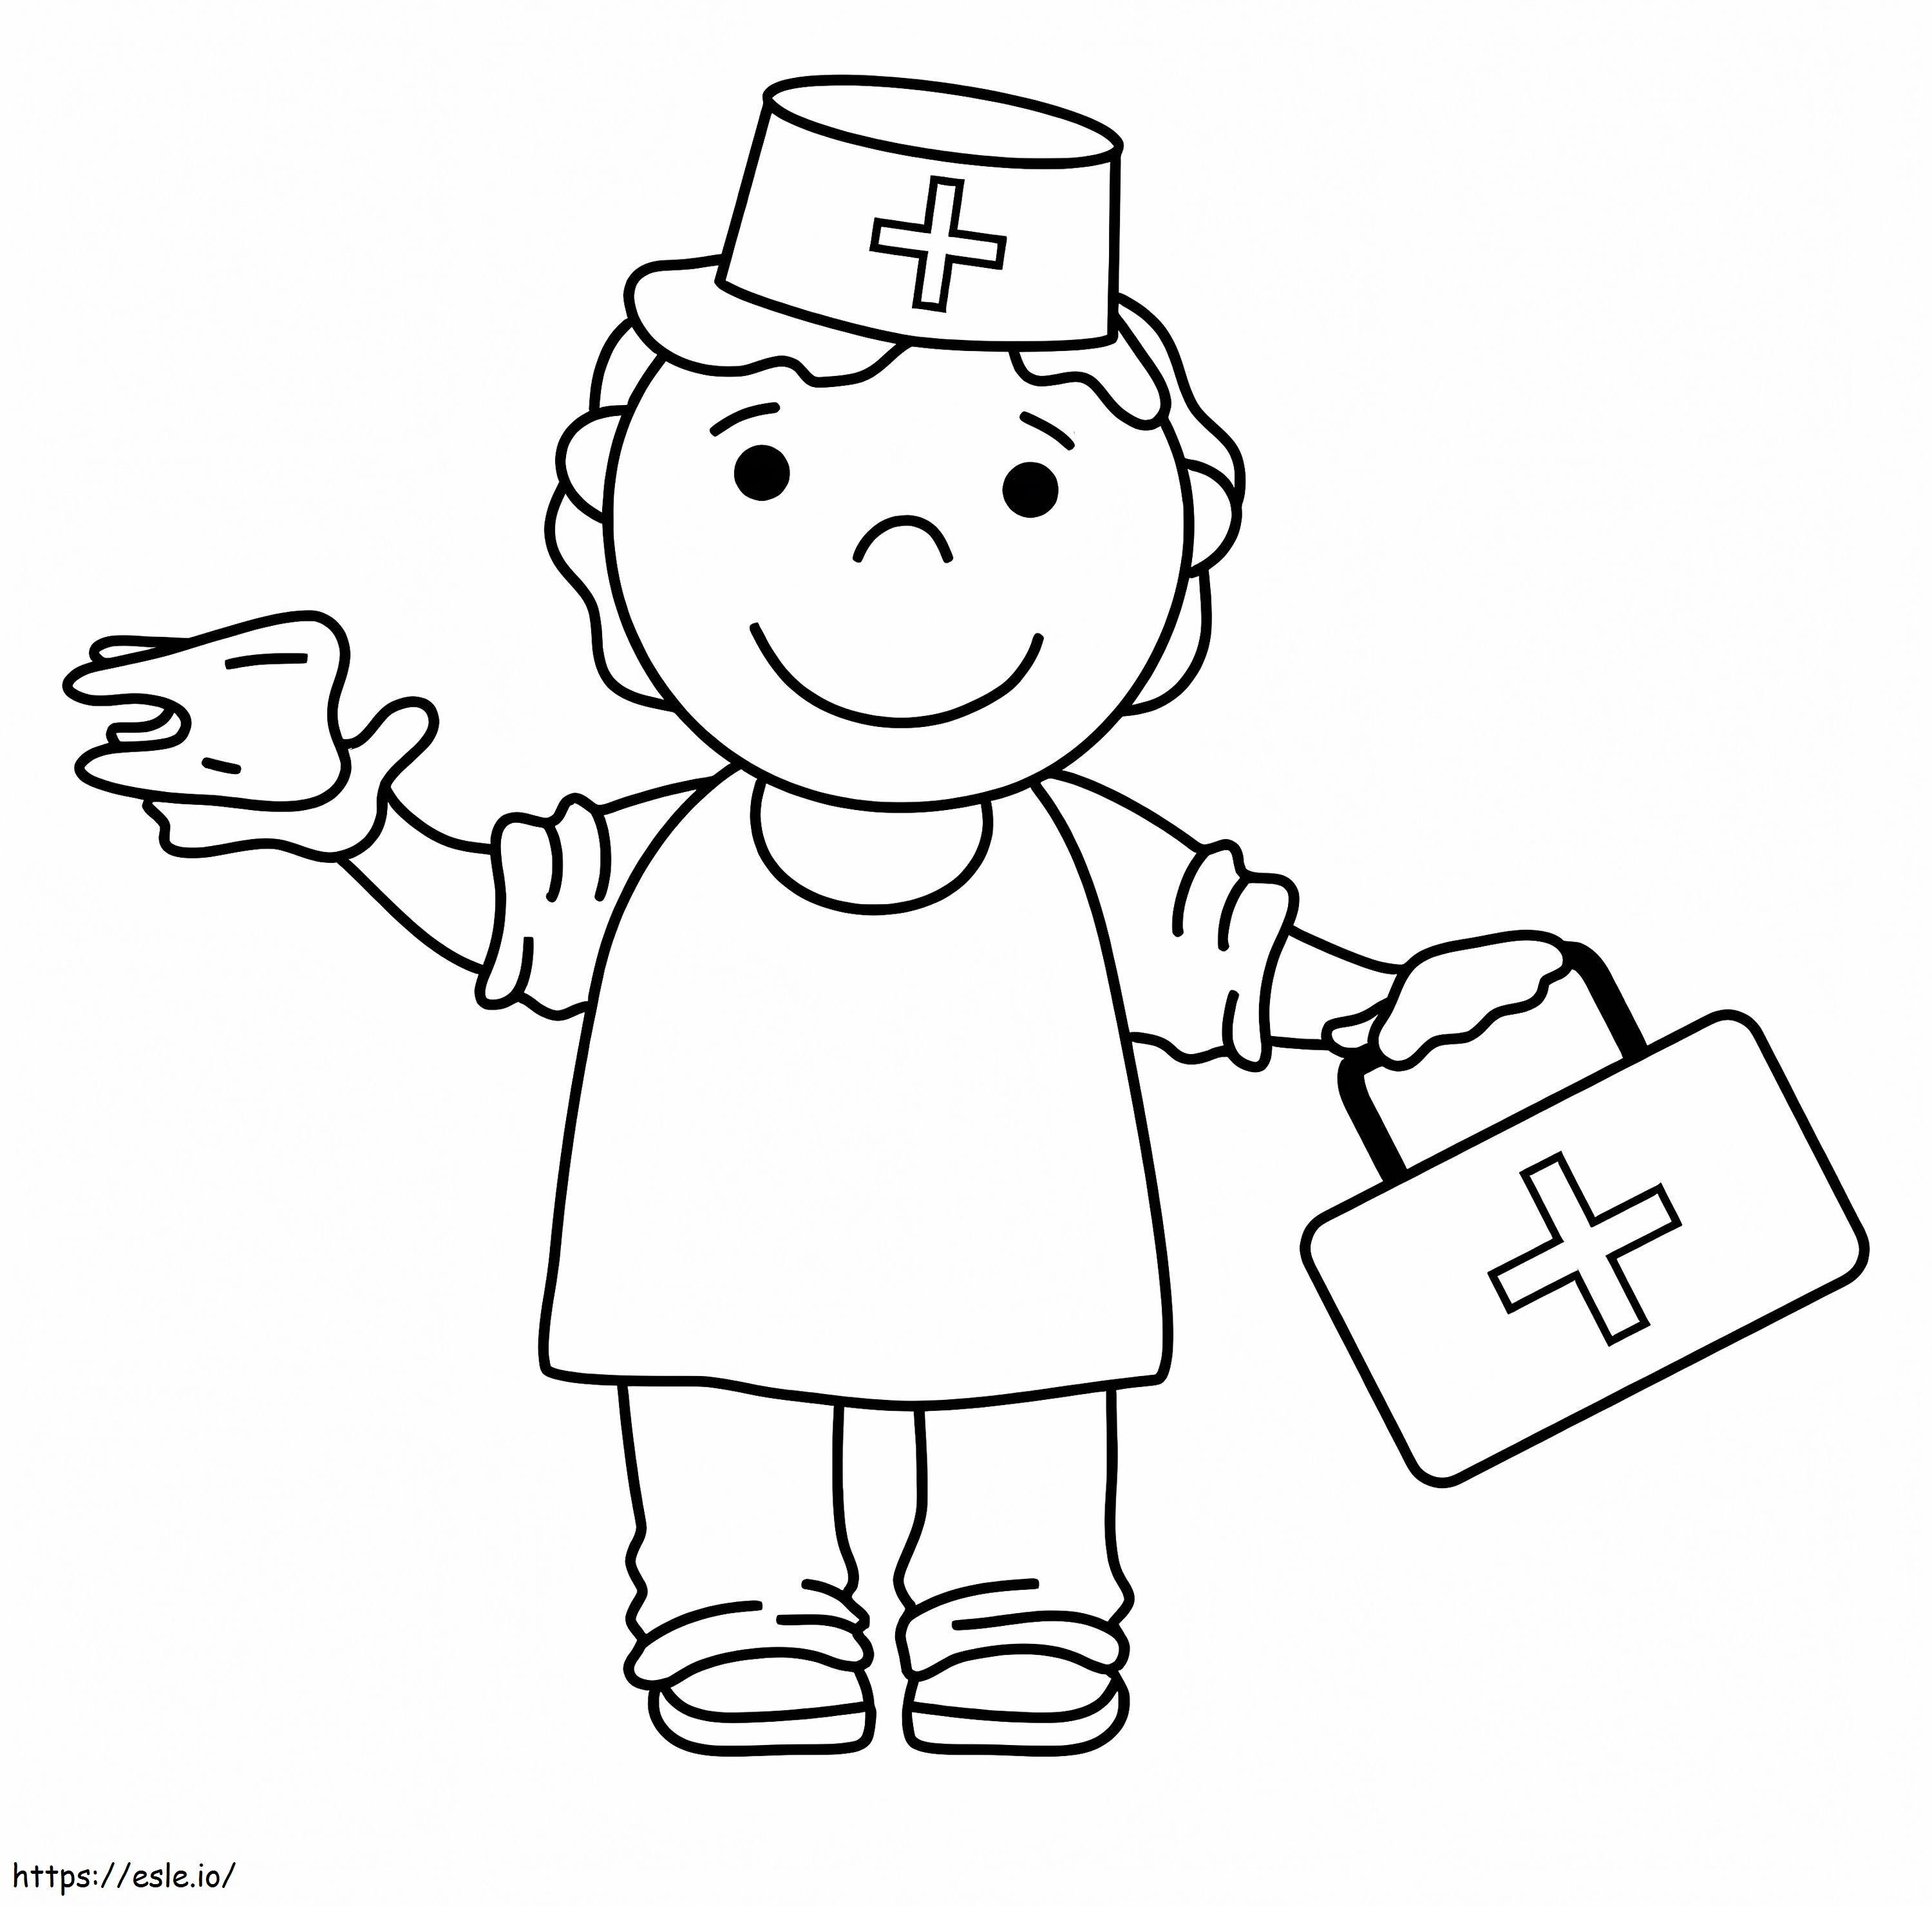 Krankenschwester 1 ausmalbilder